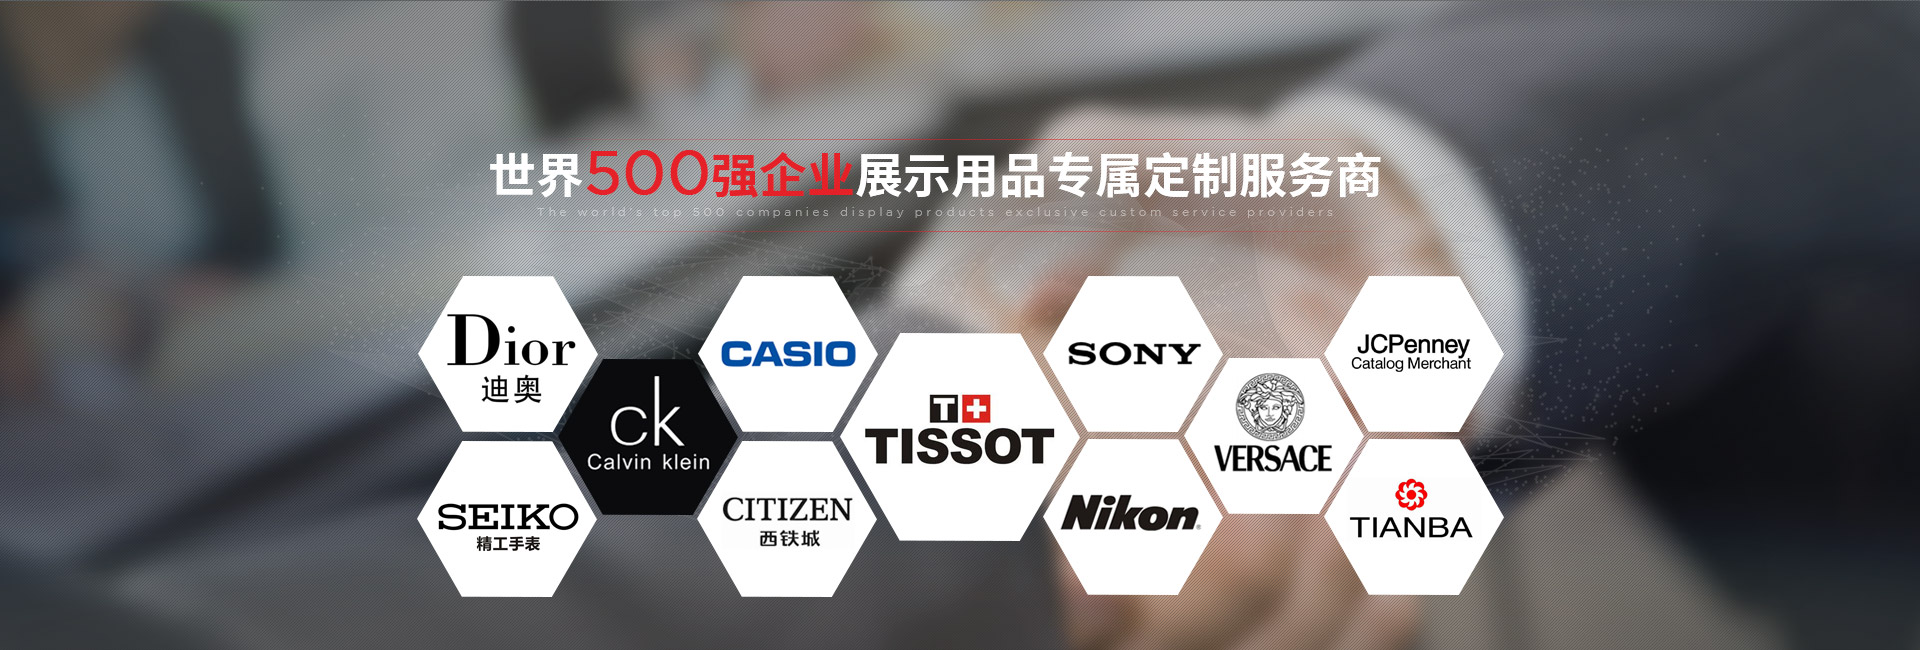 博艺-世界500强企业展示用品专属定制服务商